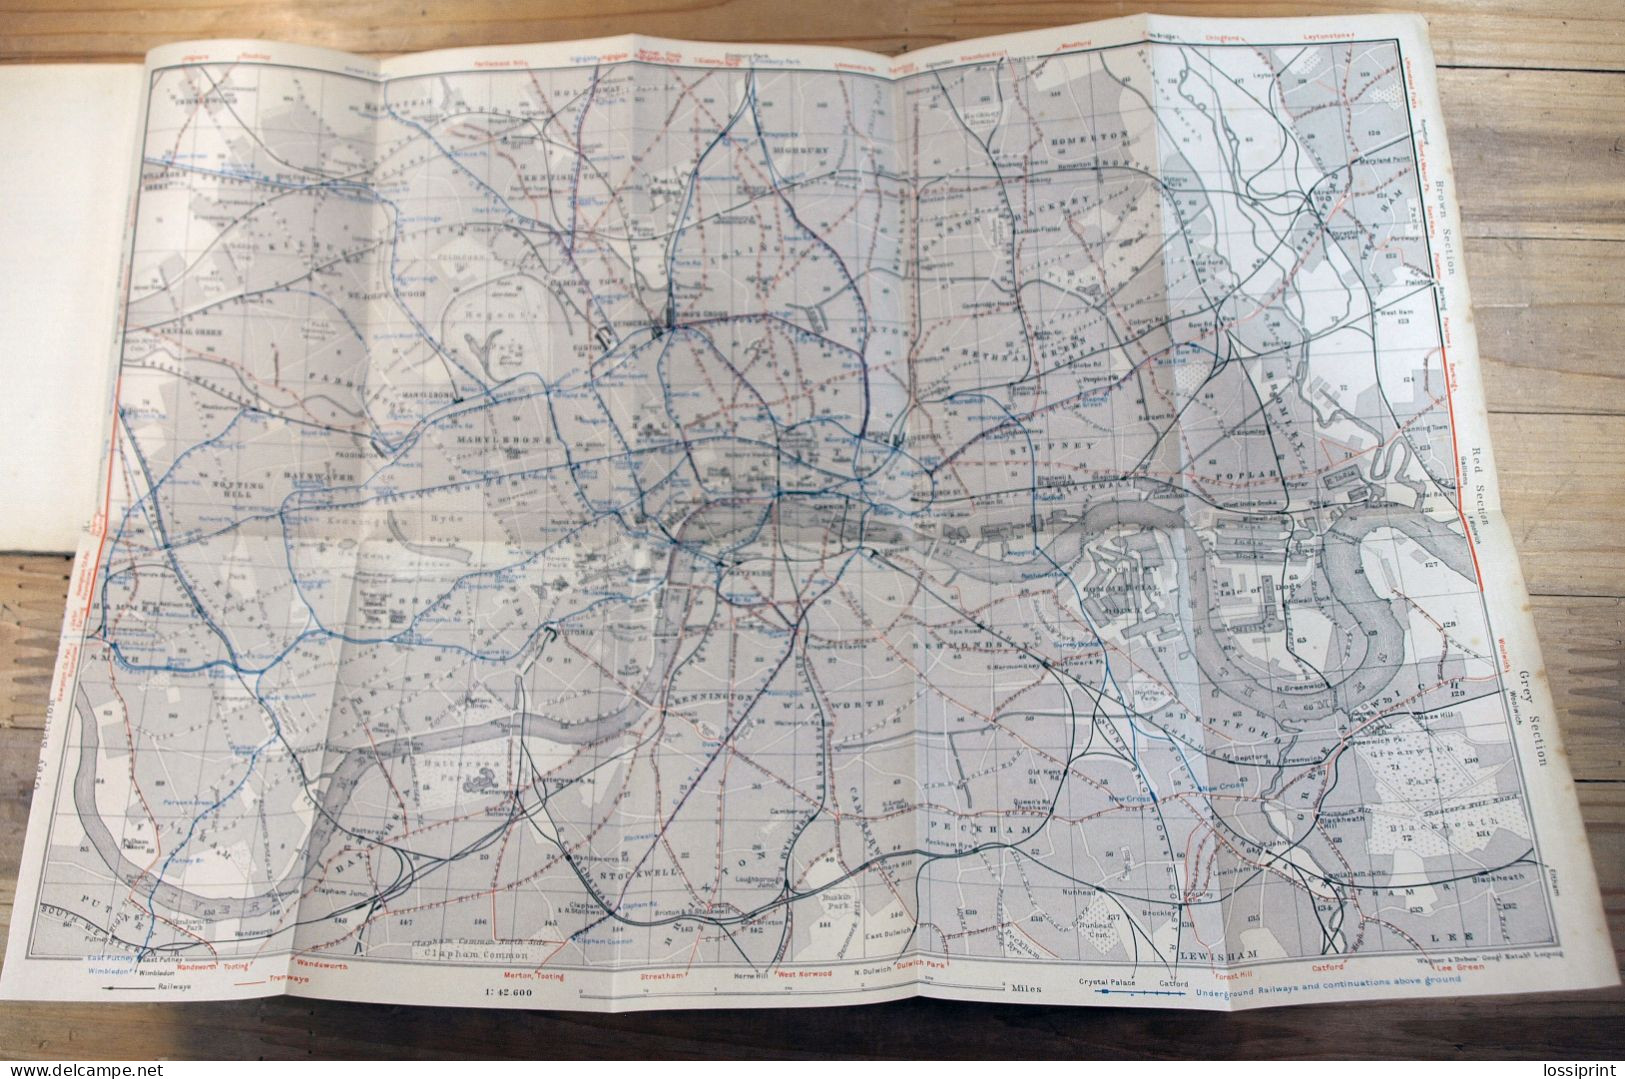 Old German Language Book, London Town Maps And Guides, Karl Baedeker 1912 - Mapamundis